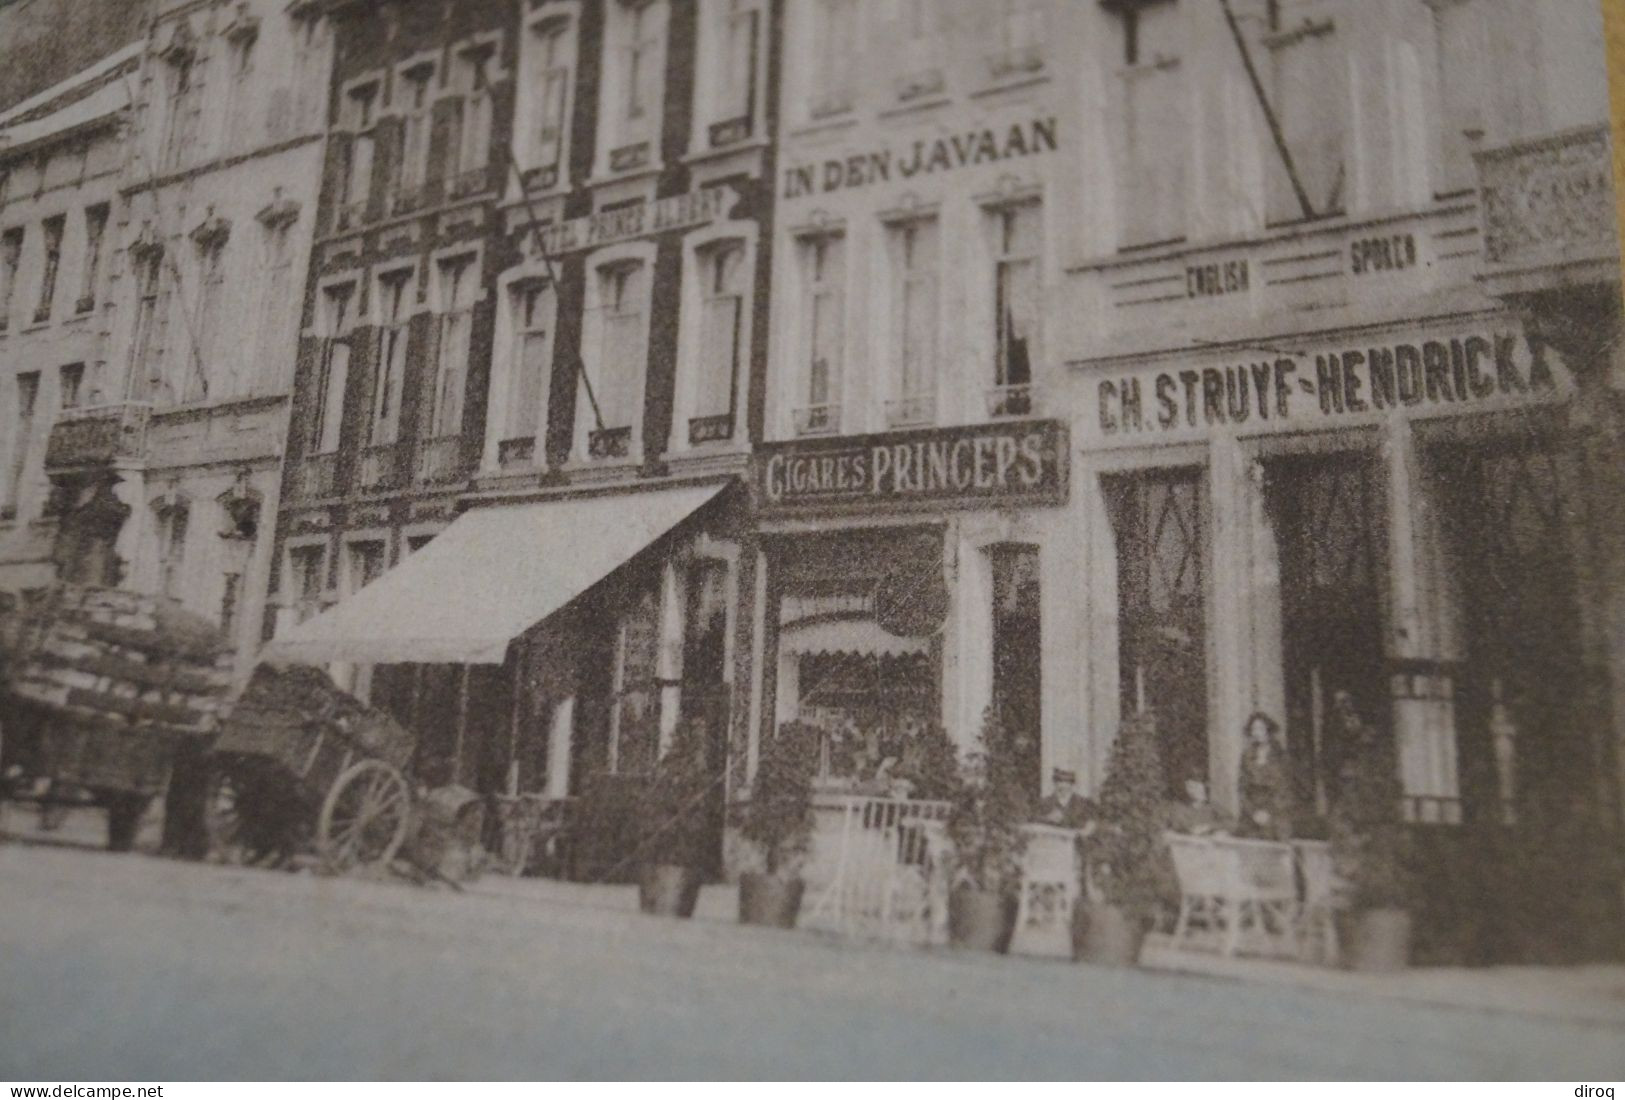 Lier - Lerre , Place Léopold 1922,RARE,colorisé,commerces,belle Carte Ancienne - Lier